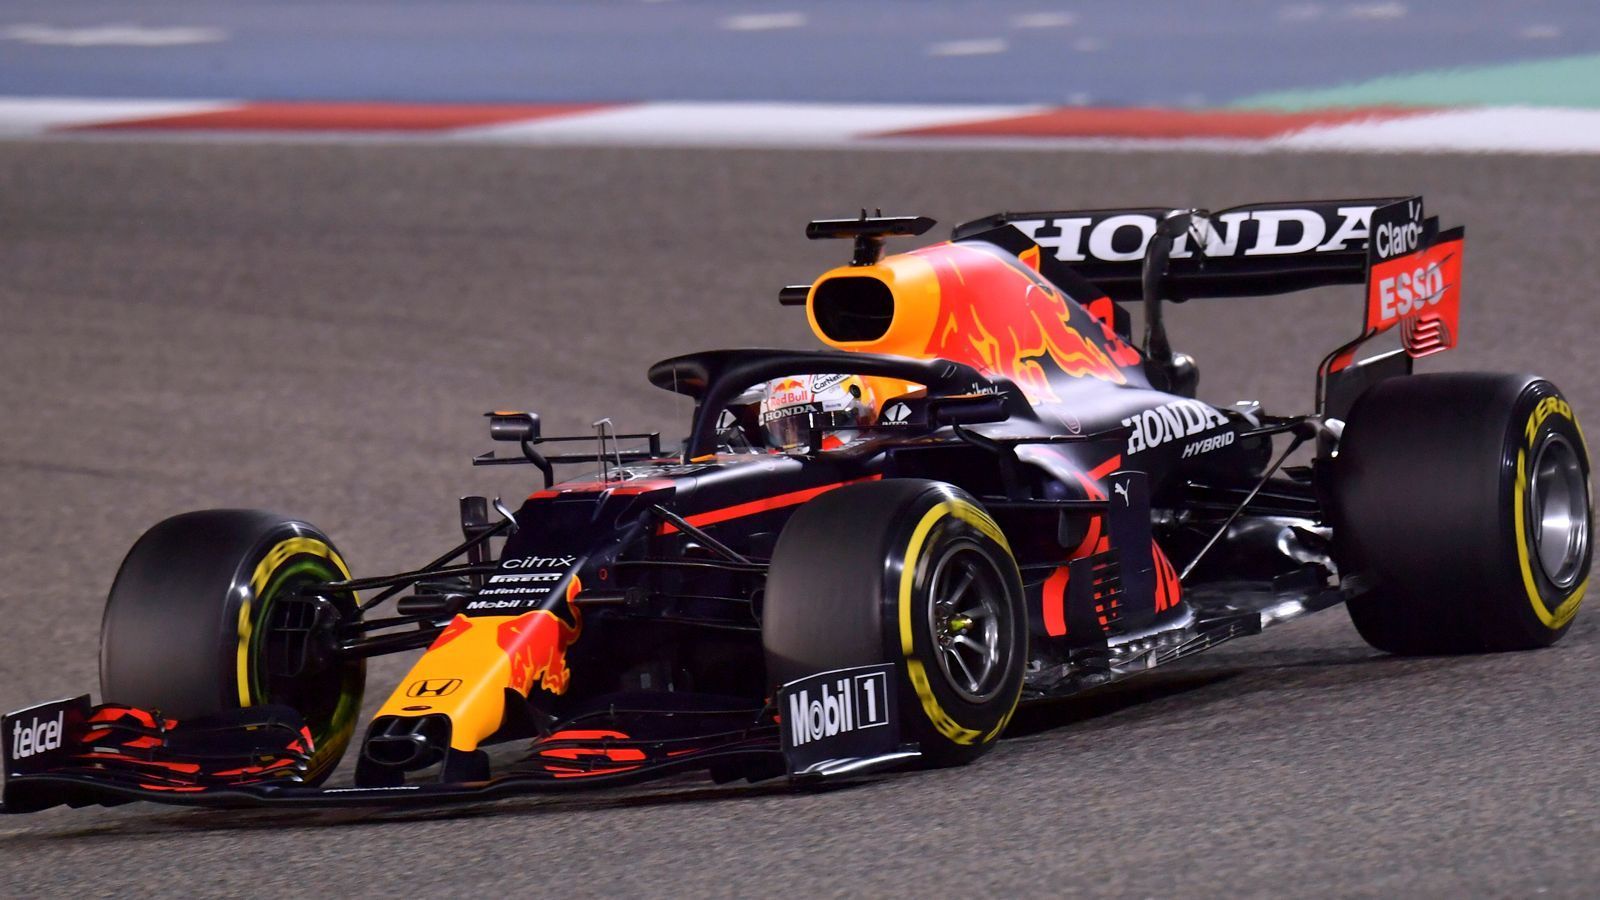 
                <strong>Das sagt Red Bull Racing</strong><br>
                Bei dem Herausforderer kann man eine gewisse Vorfreude und Aufregung nicht verhehlen, bei dem Rennstall weiß man aber auch, dass in der Formel 1 vor der Saison gerne Verstecken gespielt wird. "Es lässt sich nicht leugnen, dass nach dem reibungslosen Ablauf des dreitägigen Tests in Bahrain eine gewisse Aufregung herrscht, dass wir die siebenjährige Dominanz von Mercedes in der Formel 1 beenden könnten", sagte Red-Bull-Teamchef Christian Horner. Man dürfe aber nicht unterschätzen, wie groß diese Herausforderung sei, so der Brite. Fakt ist: Während der Silberpfeil vor sich hin stotterte, lag der Red-Bull-Renner wie ein Brett auf der Strecke. Weshalb Motorsportberater Helmut Marko sogar davon spricht, dass man die beste WM-Chance seit 2013 habe. "Ich sehe mich überhaupt nicht als Favorit", stellte Max Verstappen hingegen bei "Ziggo Sport" klar. Er glaubt sogar, dass Mercedes geblufft hat und erwartet in Bahrain weiterhin starke Silberpfeile: "Jetzt, wo es am Anfang mal nicht ganz glatt gelaufen ist, versuchen sie uns in die Favoritenrolle zu schieben. Und wenn sie dann am Ende trotzdem gewinnen, dann war es natürlich ein total unerwarteter Geniestreich."
              